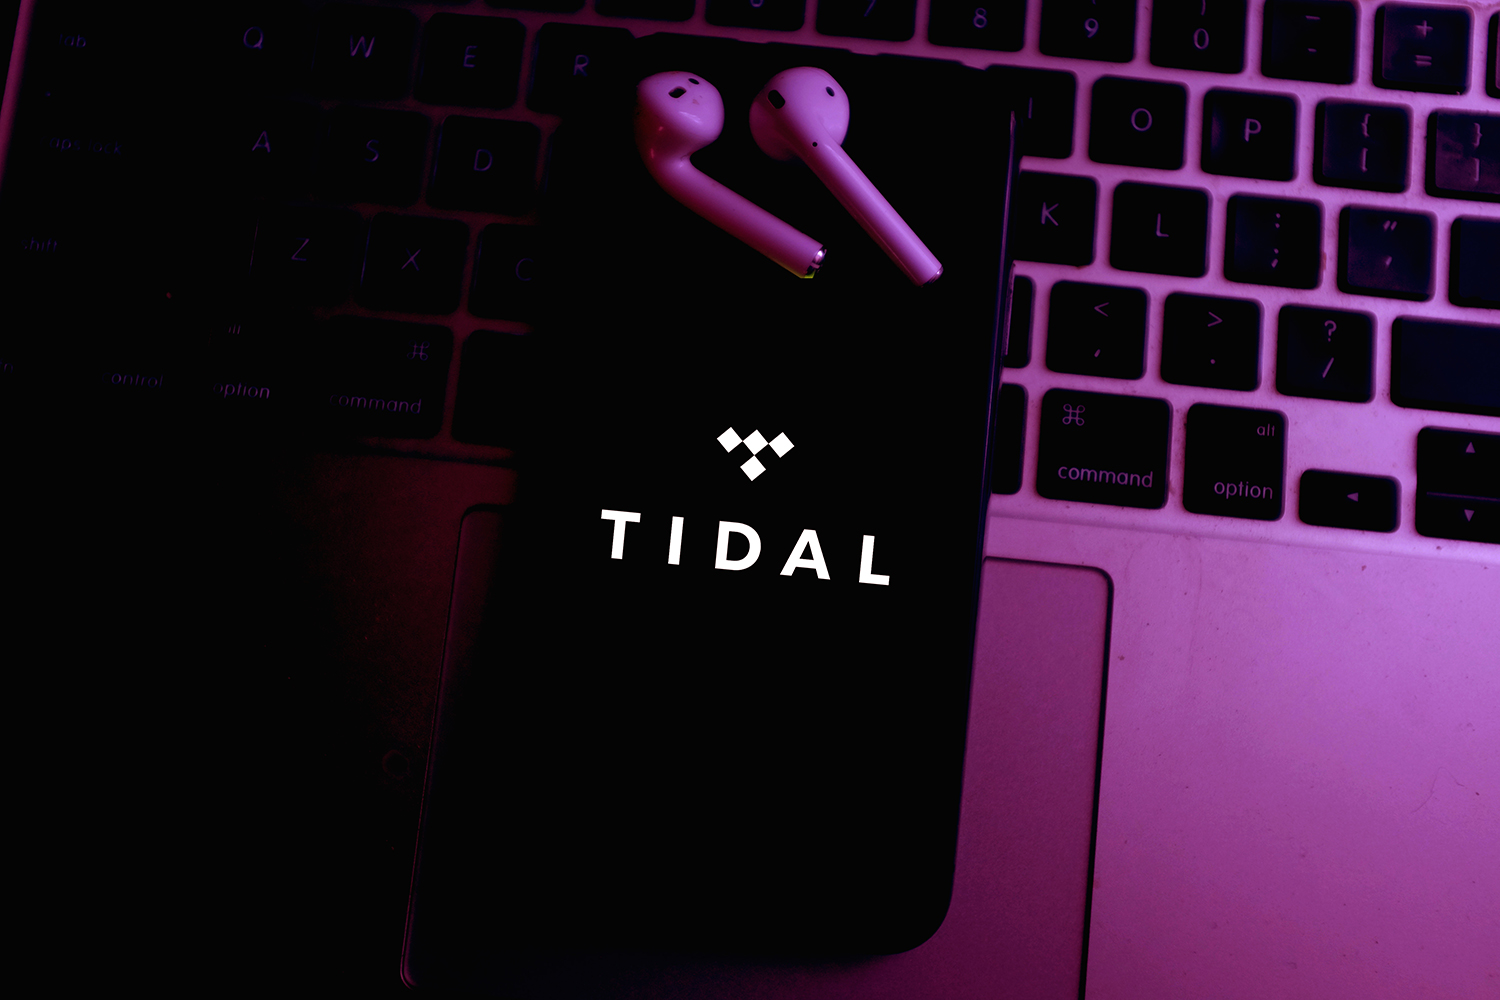 Un smartphone con el logo de Tidal.